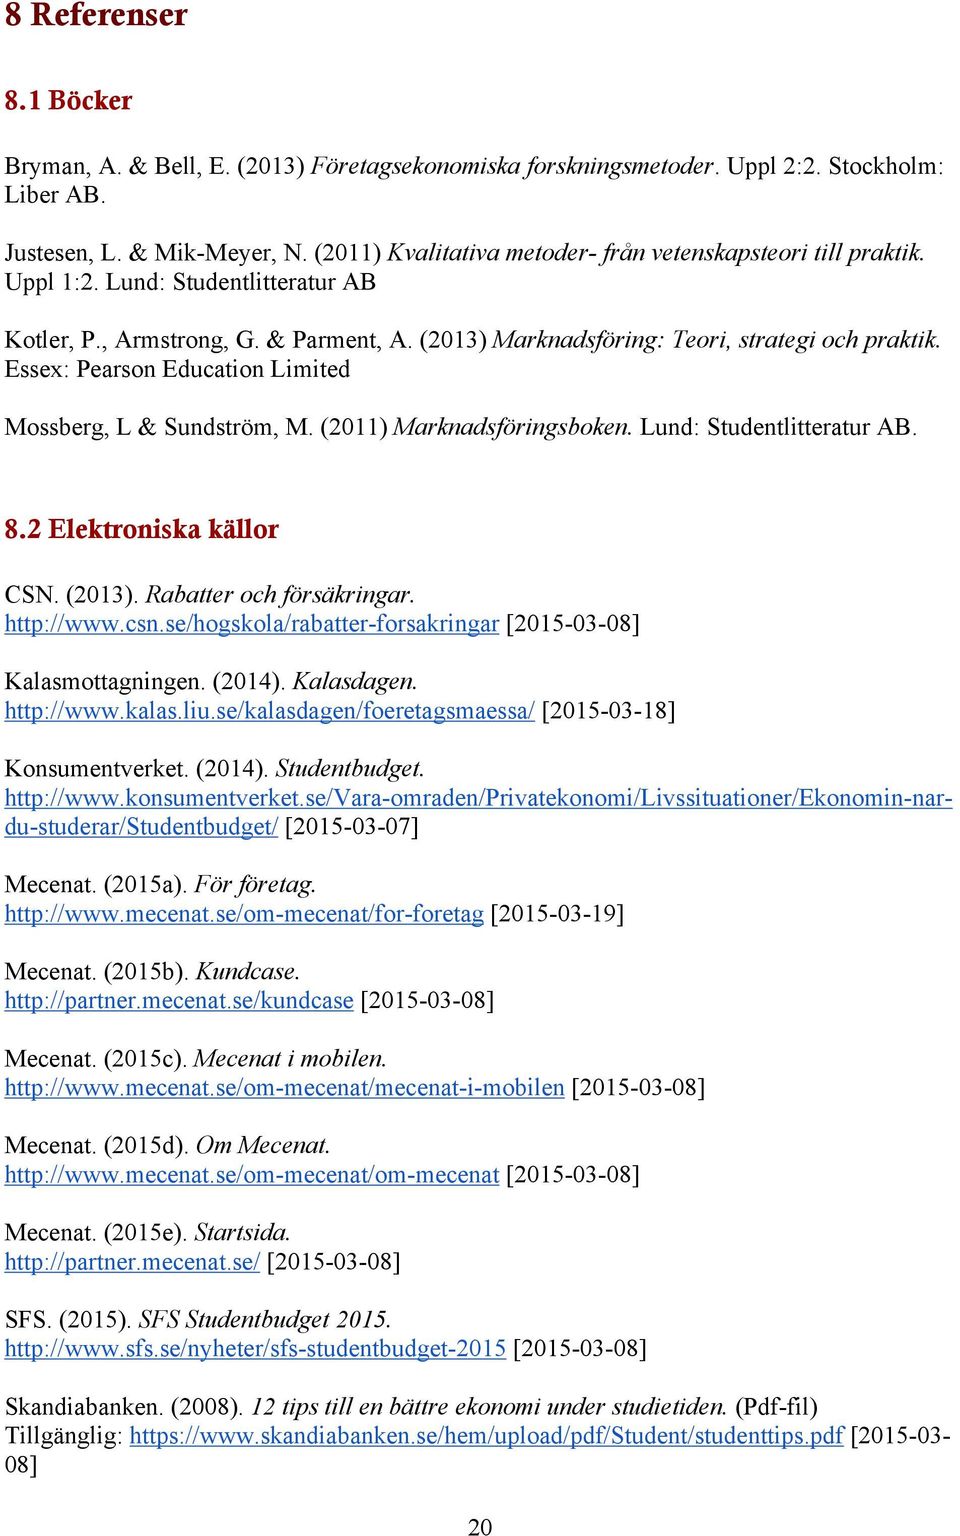 Essex: Pearson Education Limited Mossberg, L & Sundström, M. (2011) Marknadsföringsboken. Lund: Studentlitteratur AB. 8.2 Elektroniska källor CSN. (2013). Rabatter och försäkringar. http://www.csn.